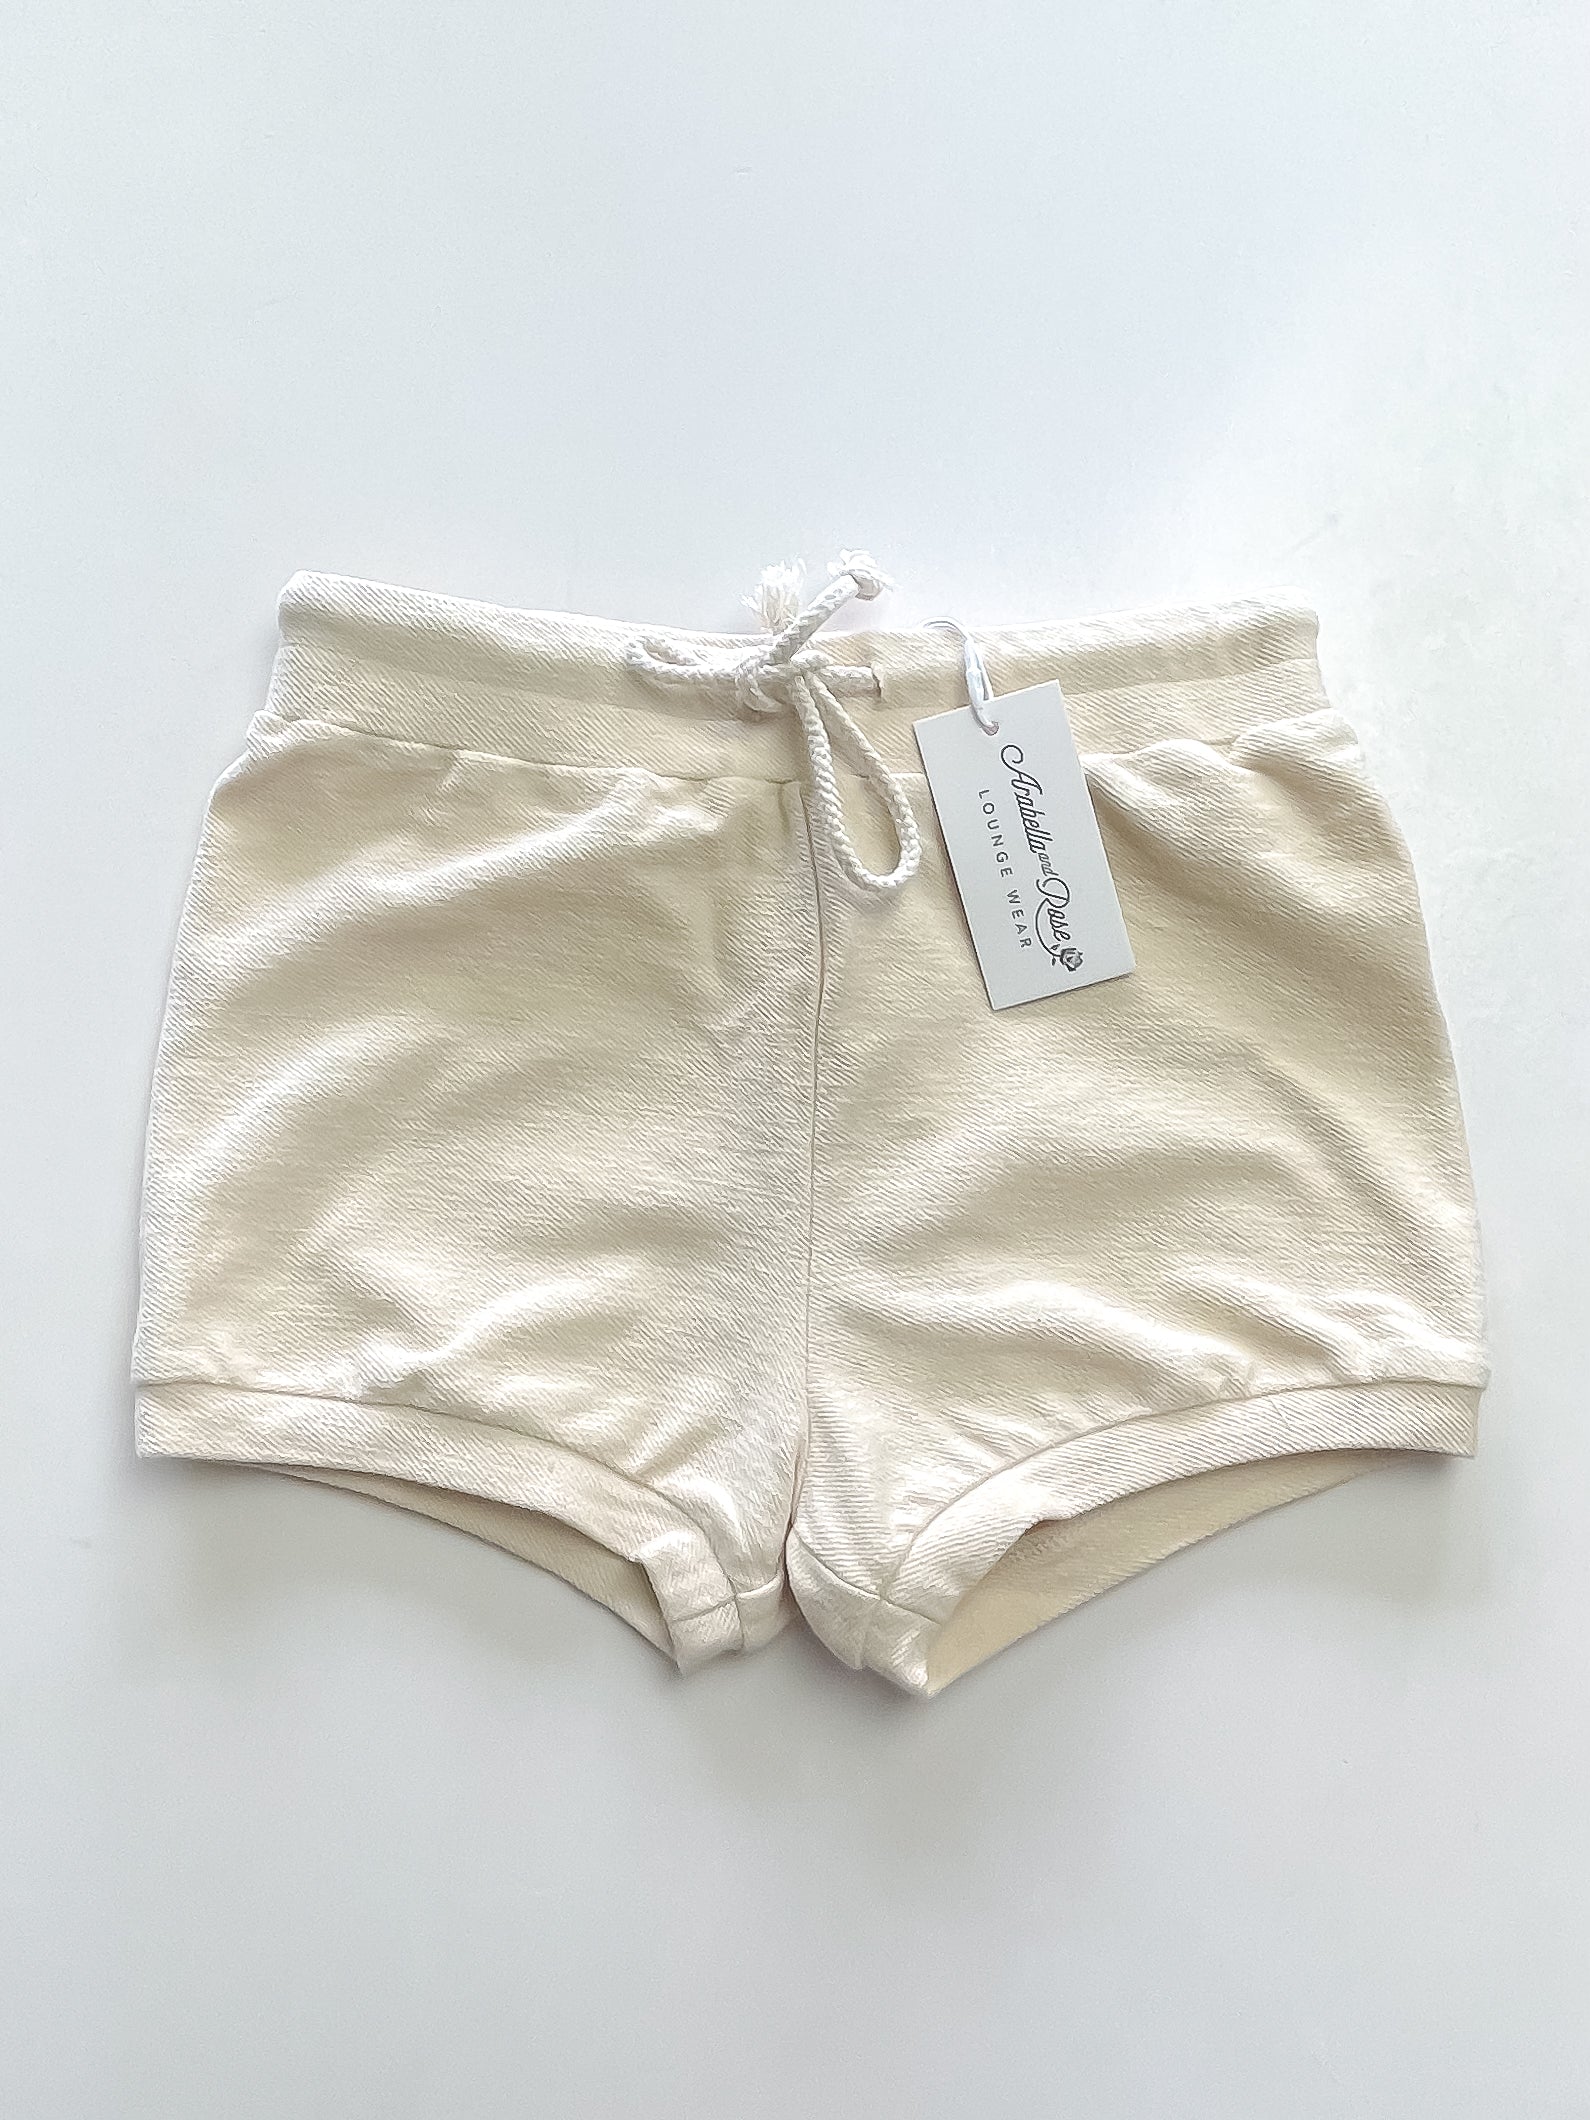 BNWT Arabella & Rose french terry shorts (7y)